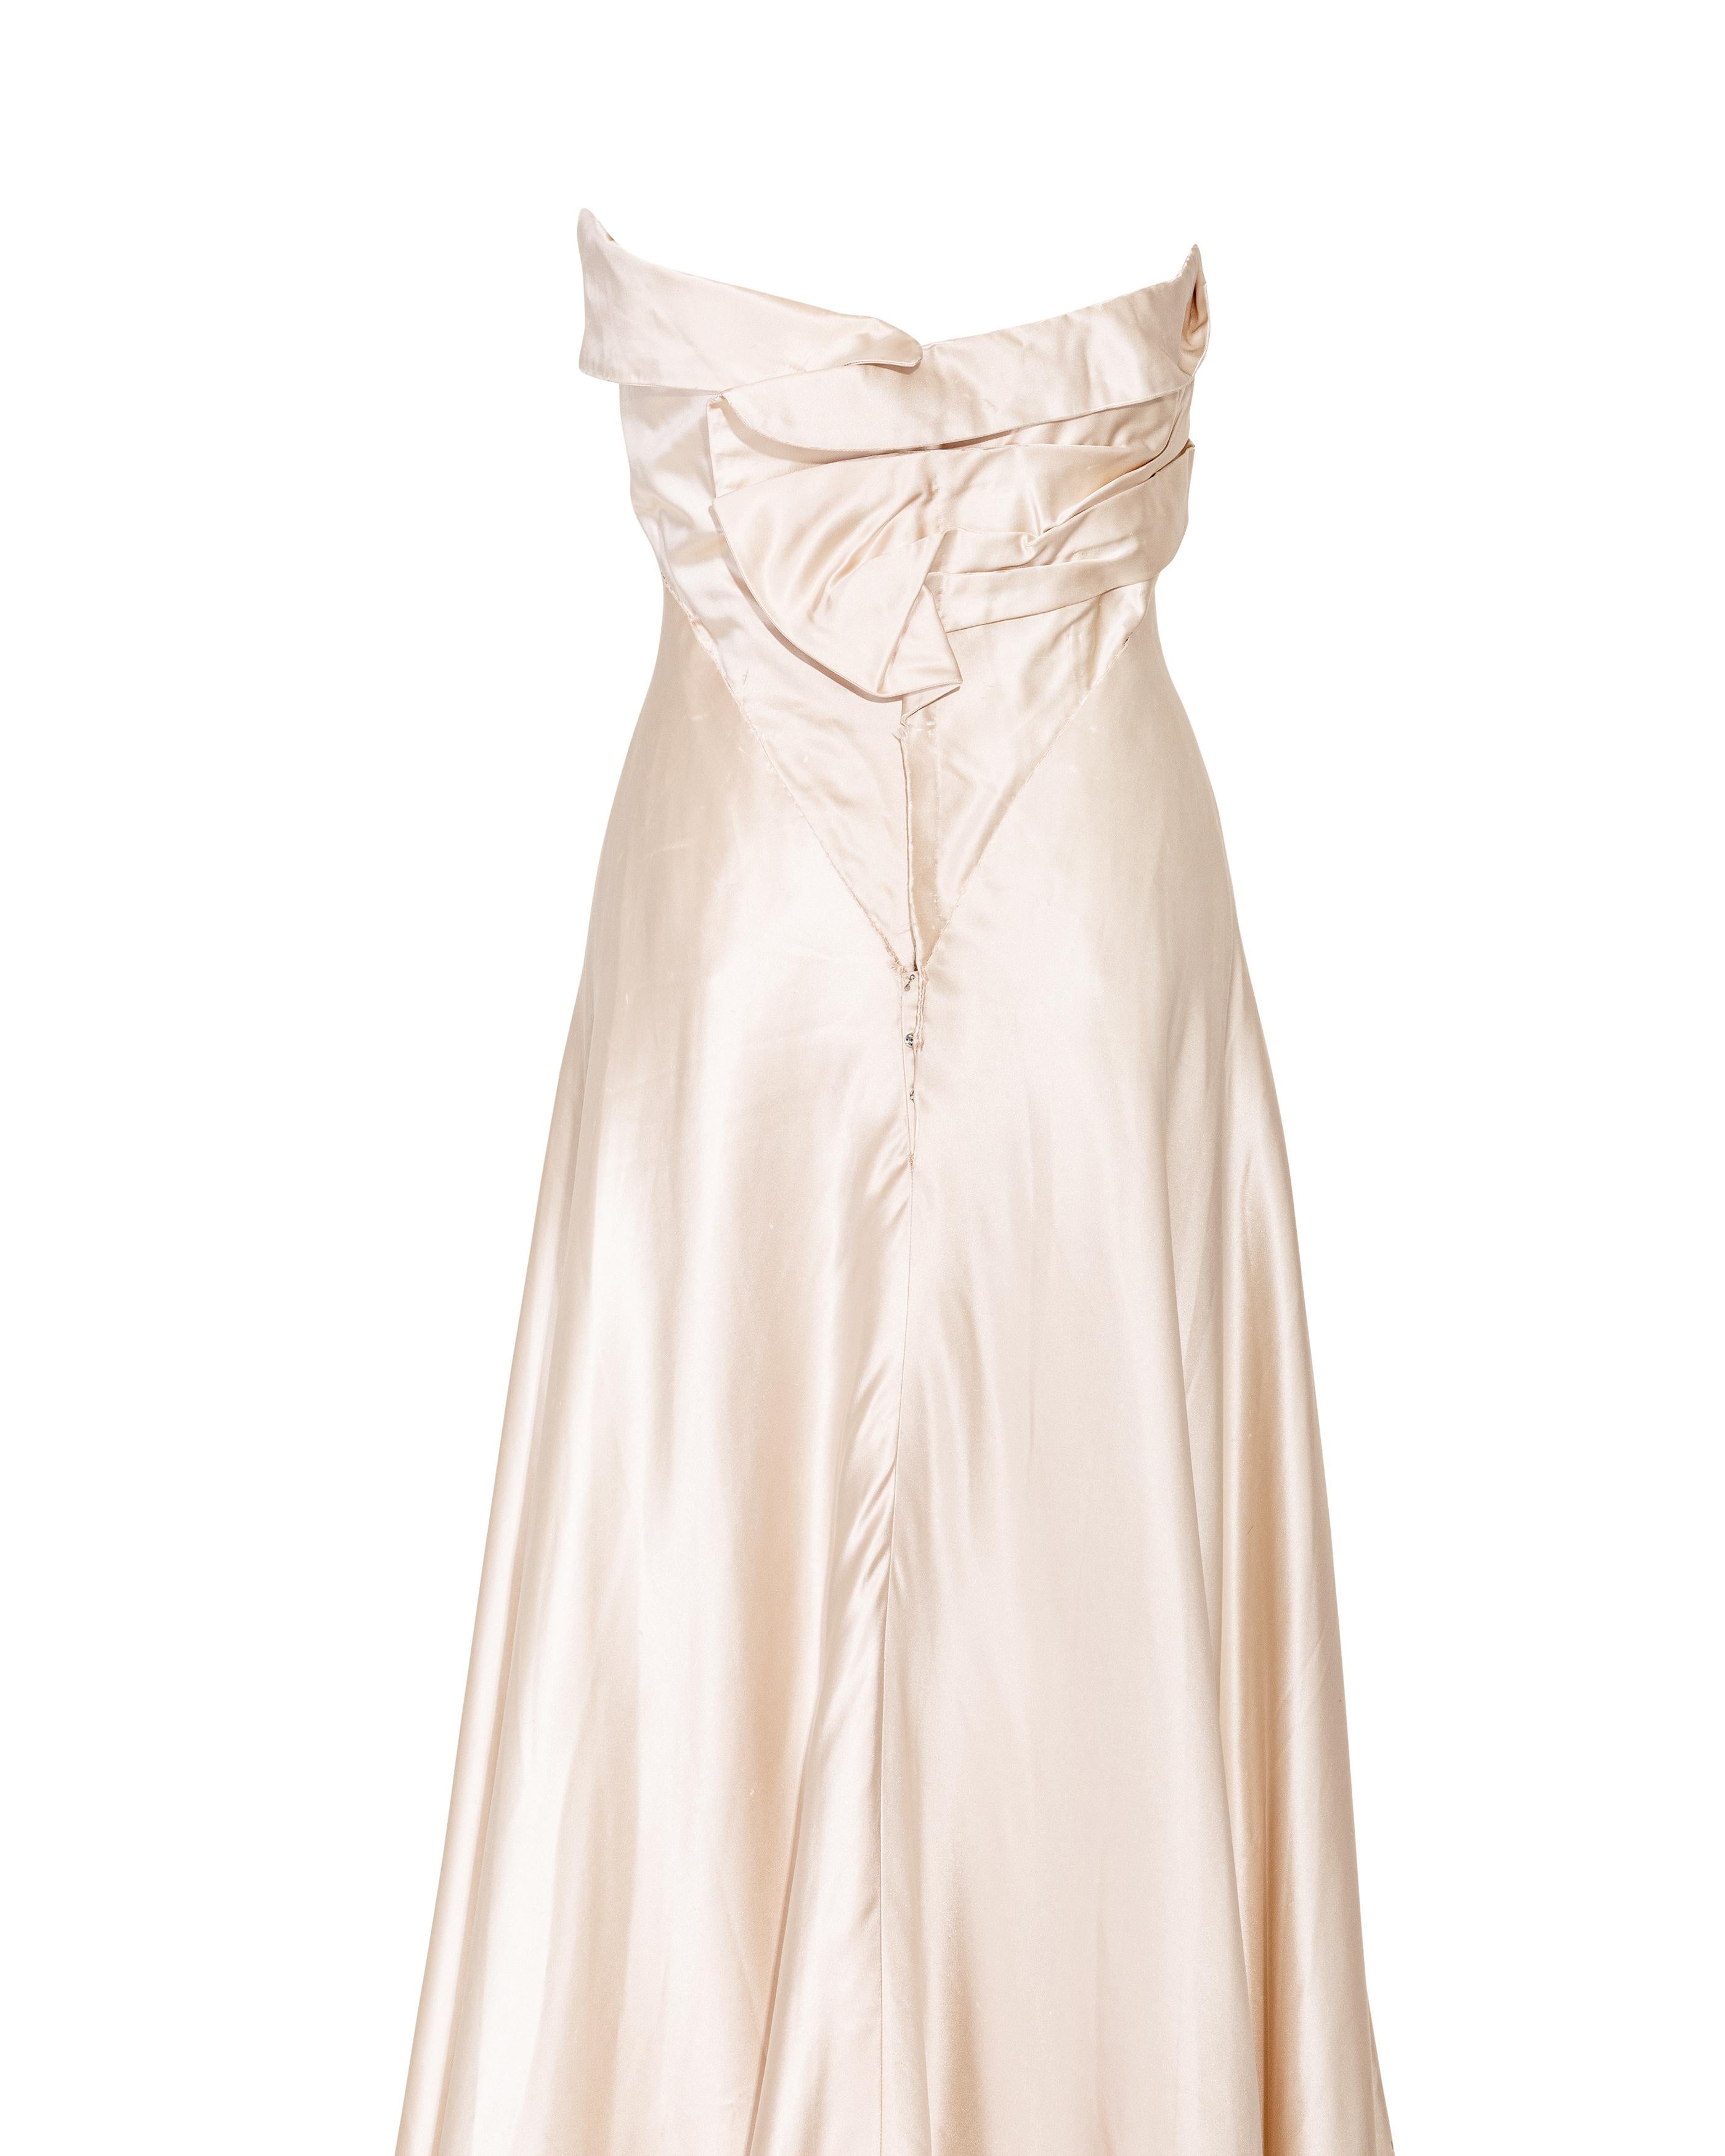 Irene Lentz Haute Couture des années 1940 - Robe à bretelles en soie crème à taille haute 2